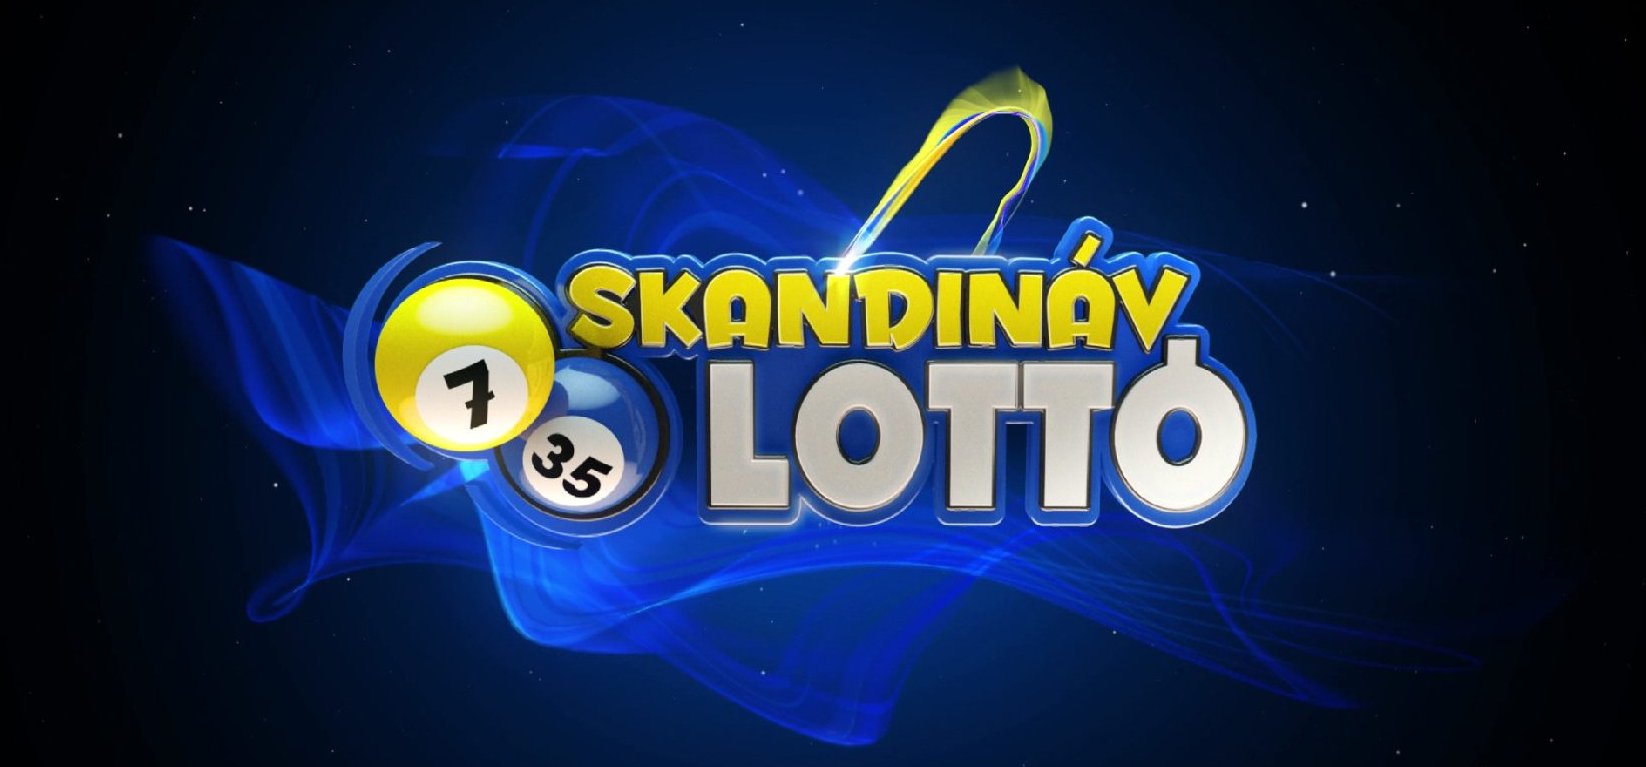 Skandináv lottó: több mint 100 millió forint várta a gazdáját – Mutatjuk lett-e telitalálatos szelvény